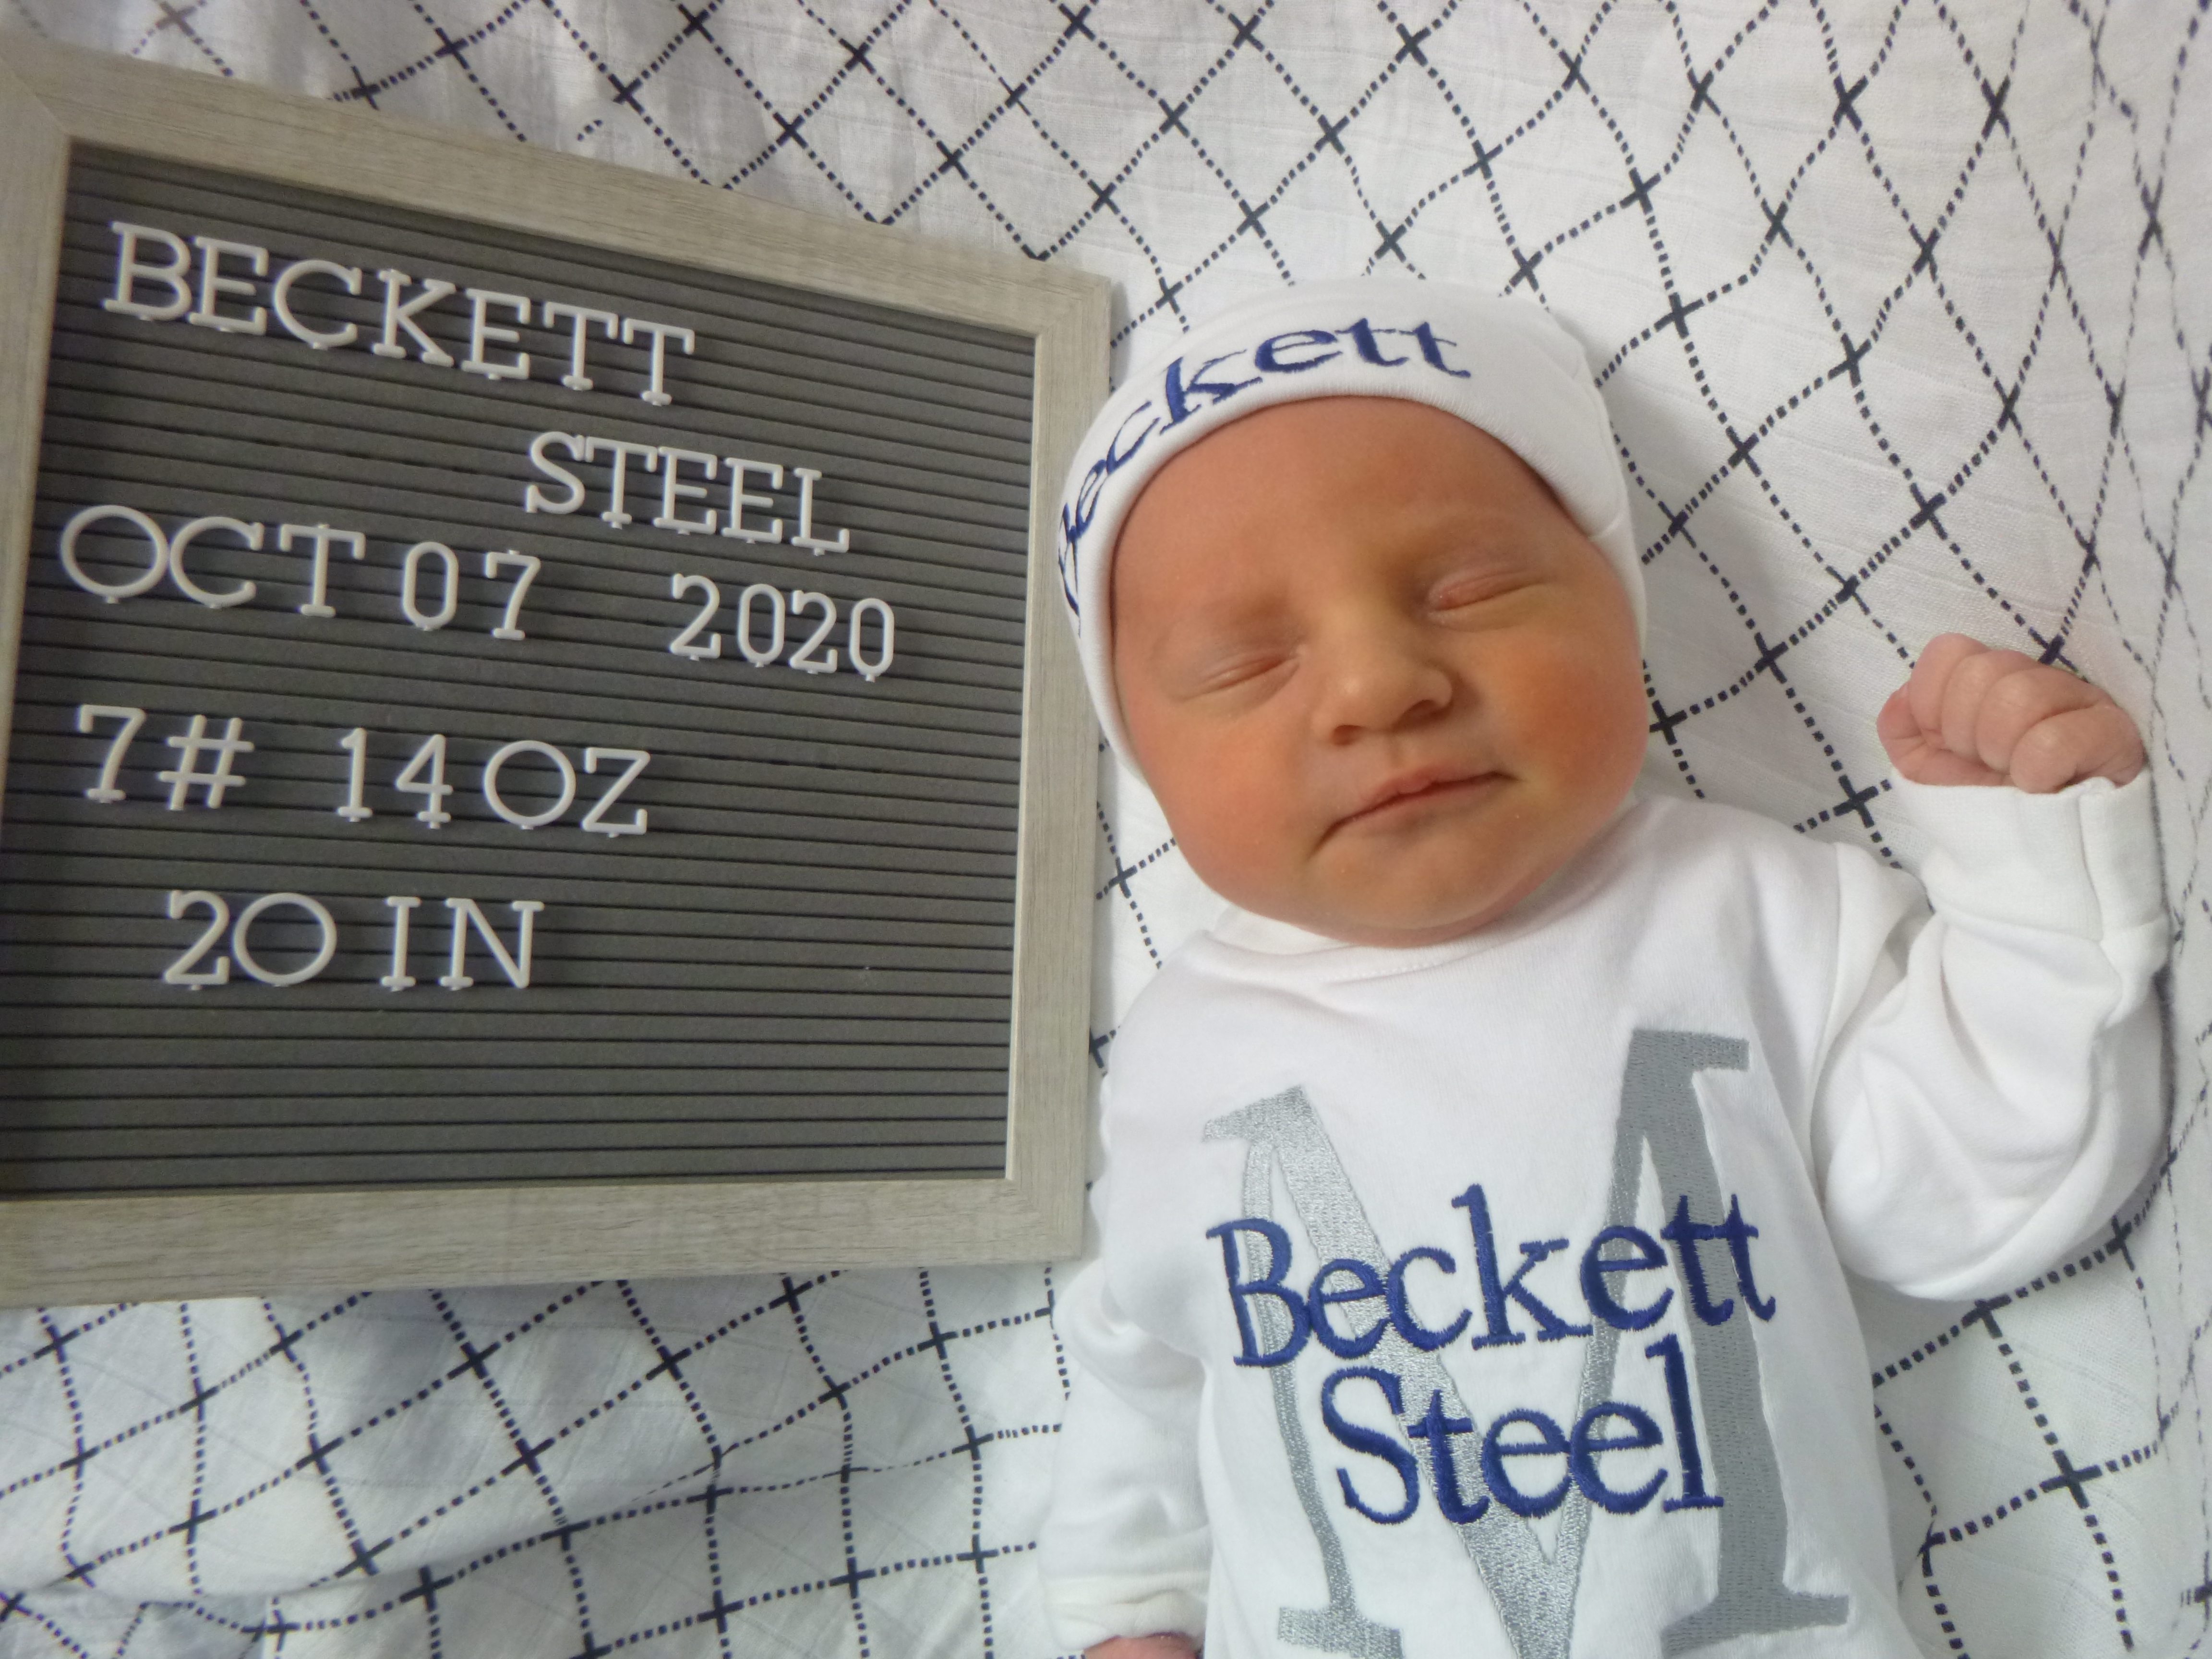 Beckett Steel